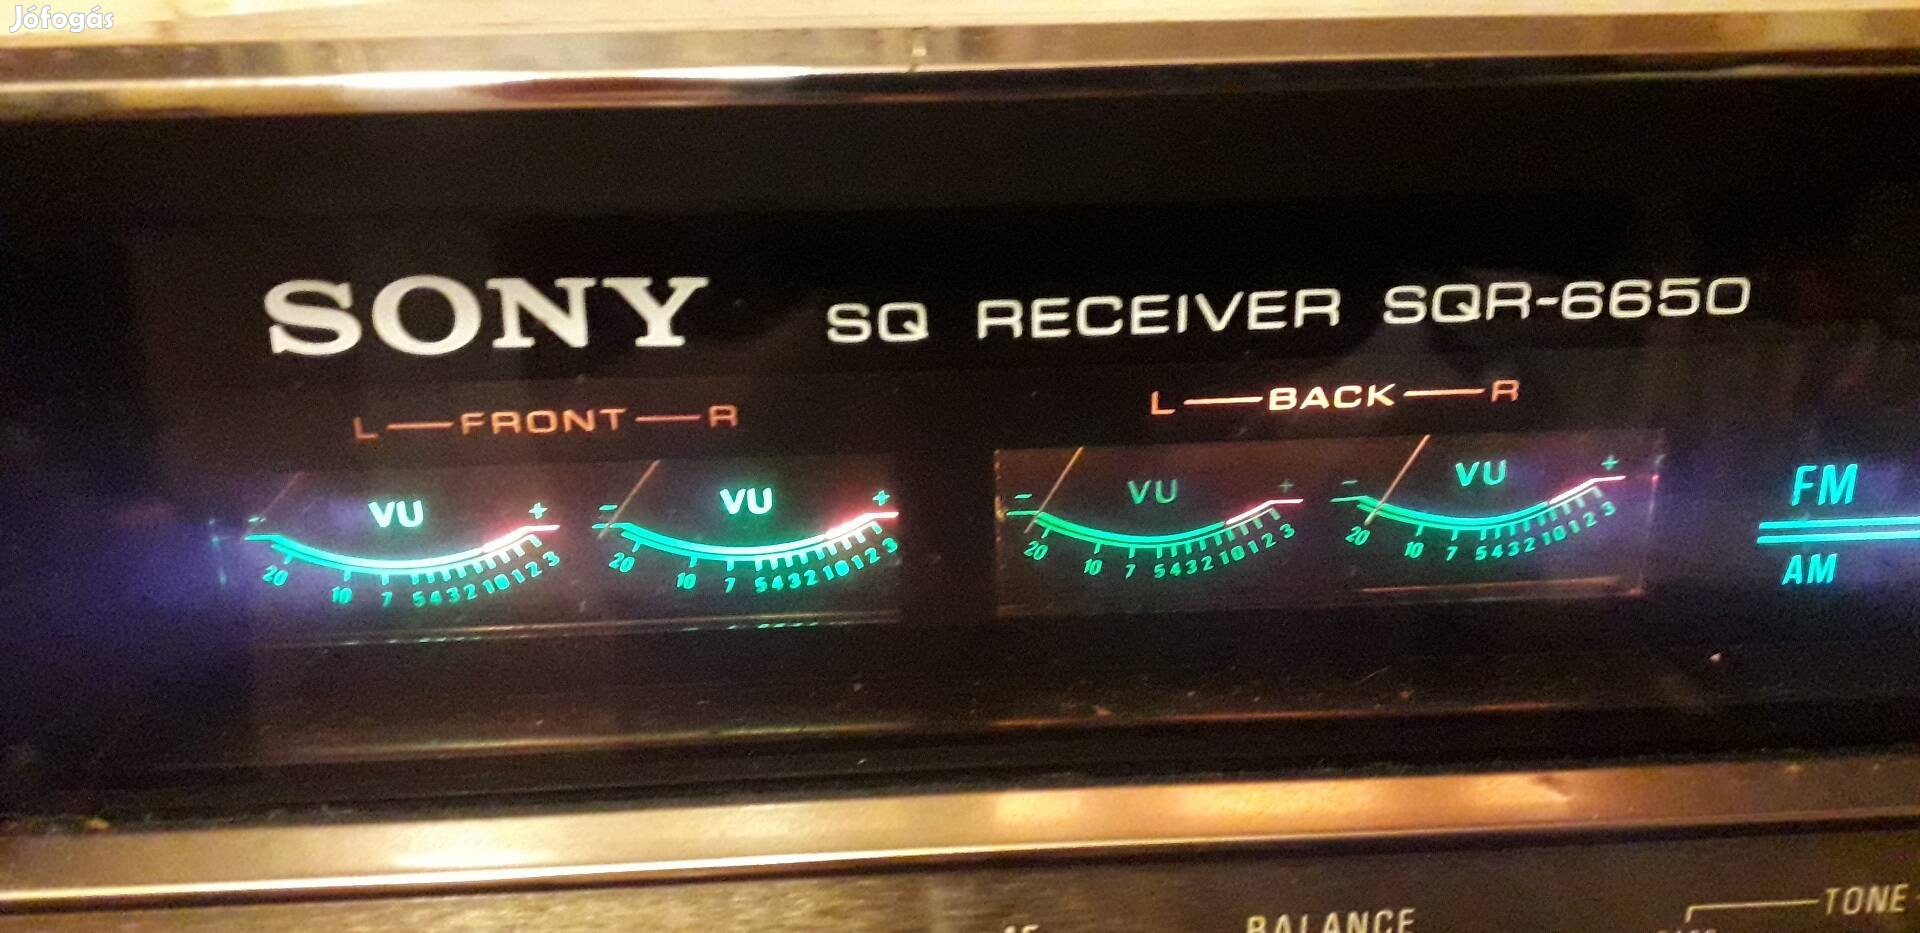 Sony SQR quadro 6650 receiver rádiós erősítő.